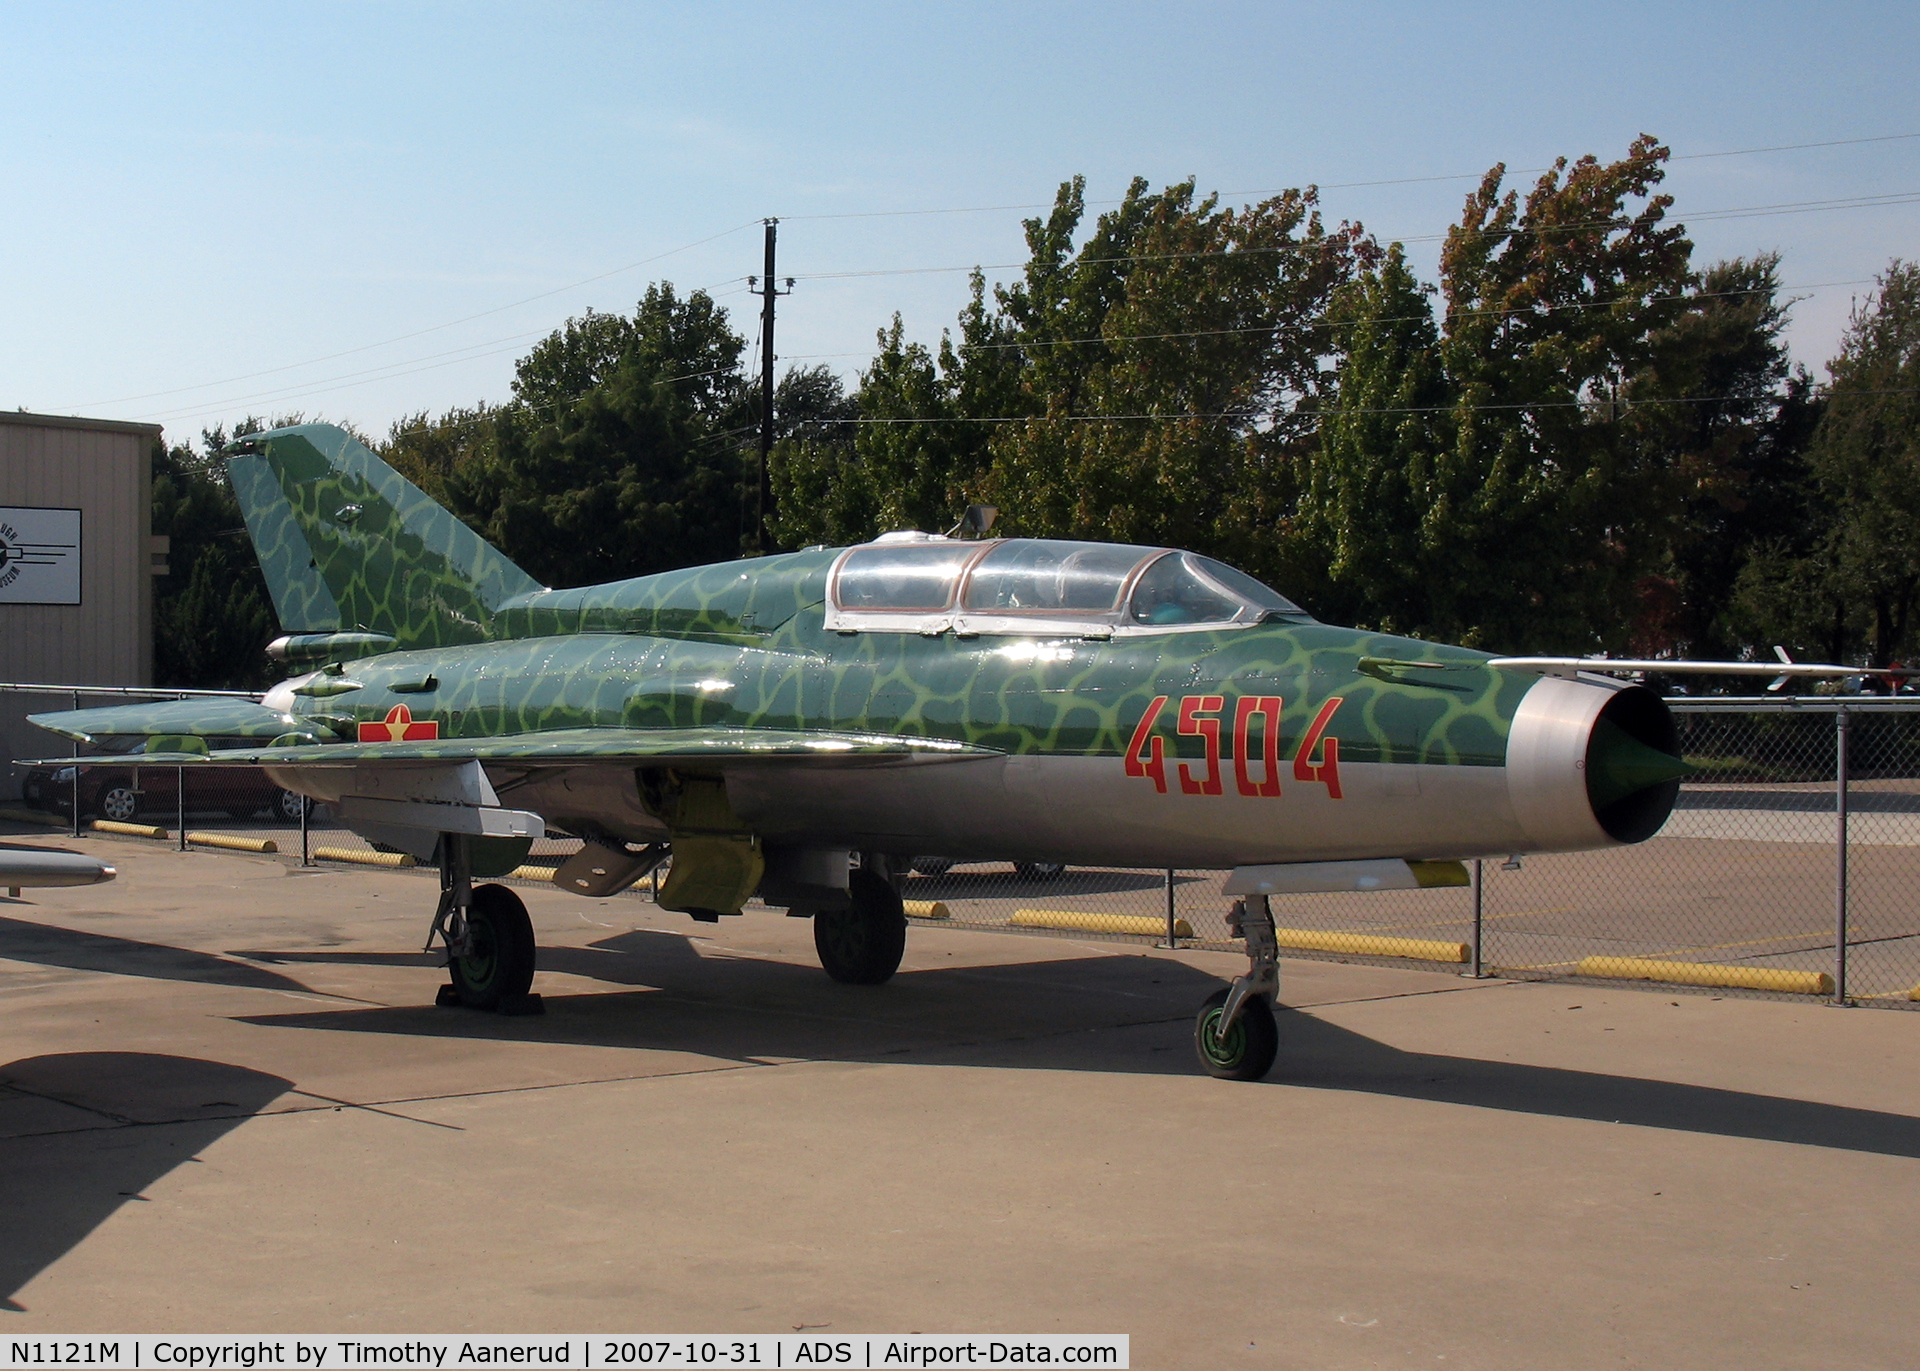 N1121M, Mikoyan-Gurevich MiG-21US C/N 4685145, Cavanaugh Flight Museum